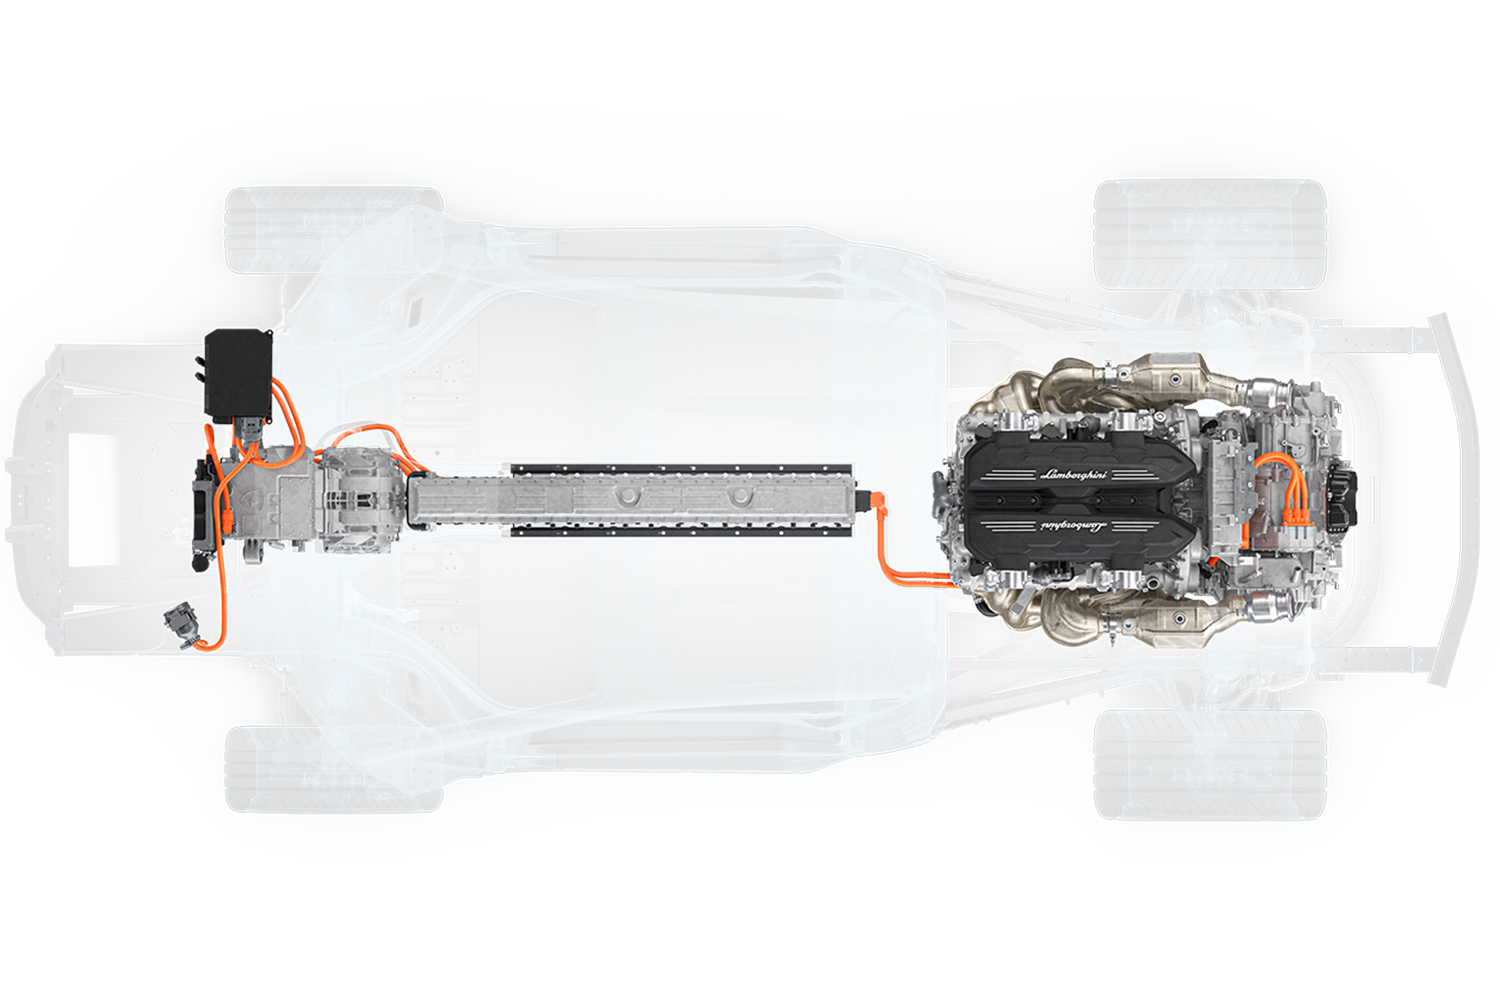 ランボルギーニ新フラッグシップの最高出力は1015馬力 〜 画像12